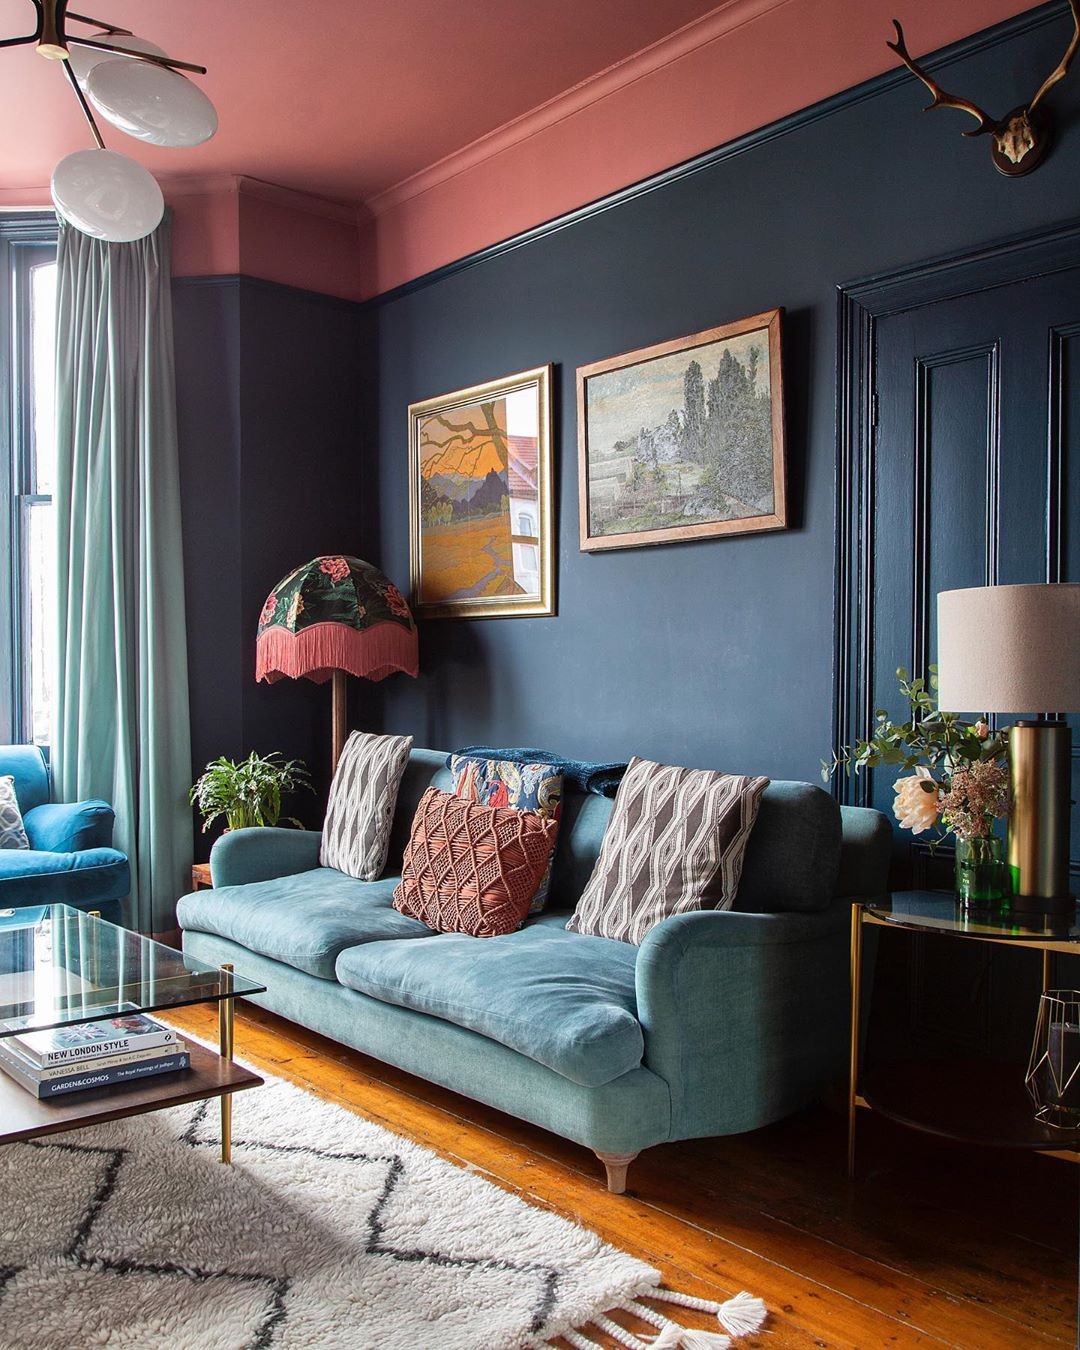 Décor do dia: sala de estar azul com teto rosa (Foto: Reprodução/Instagram)